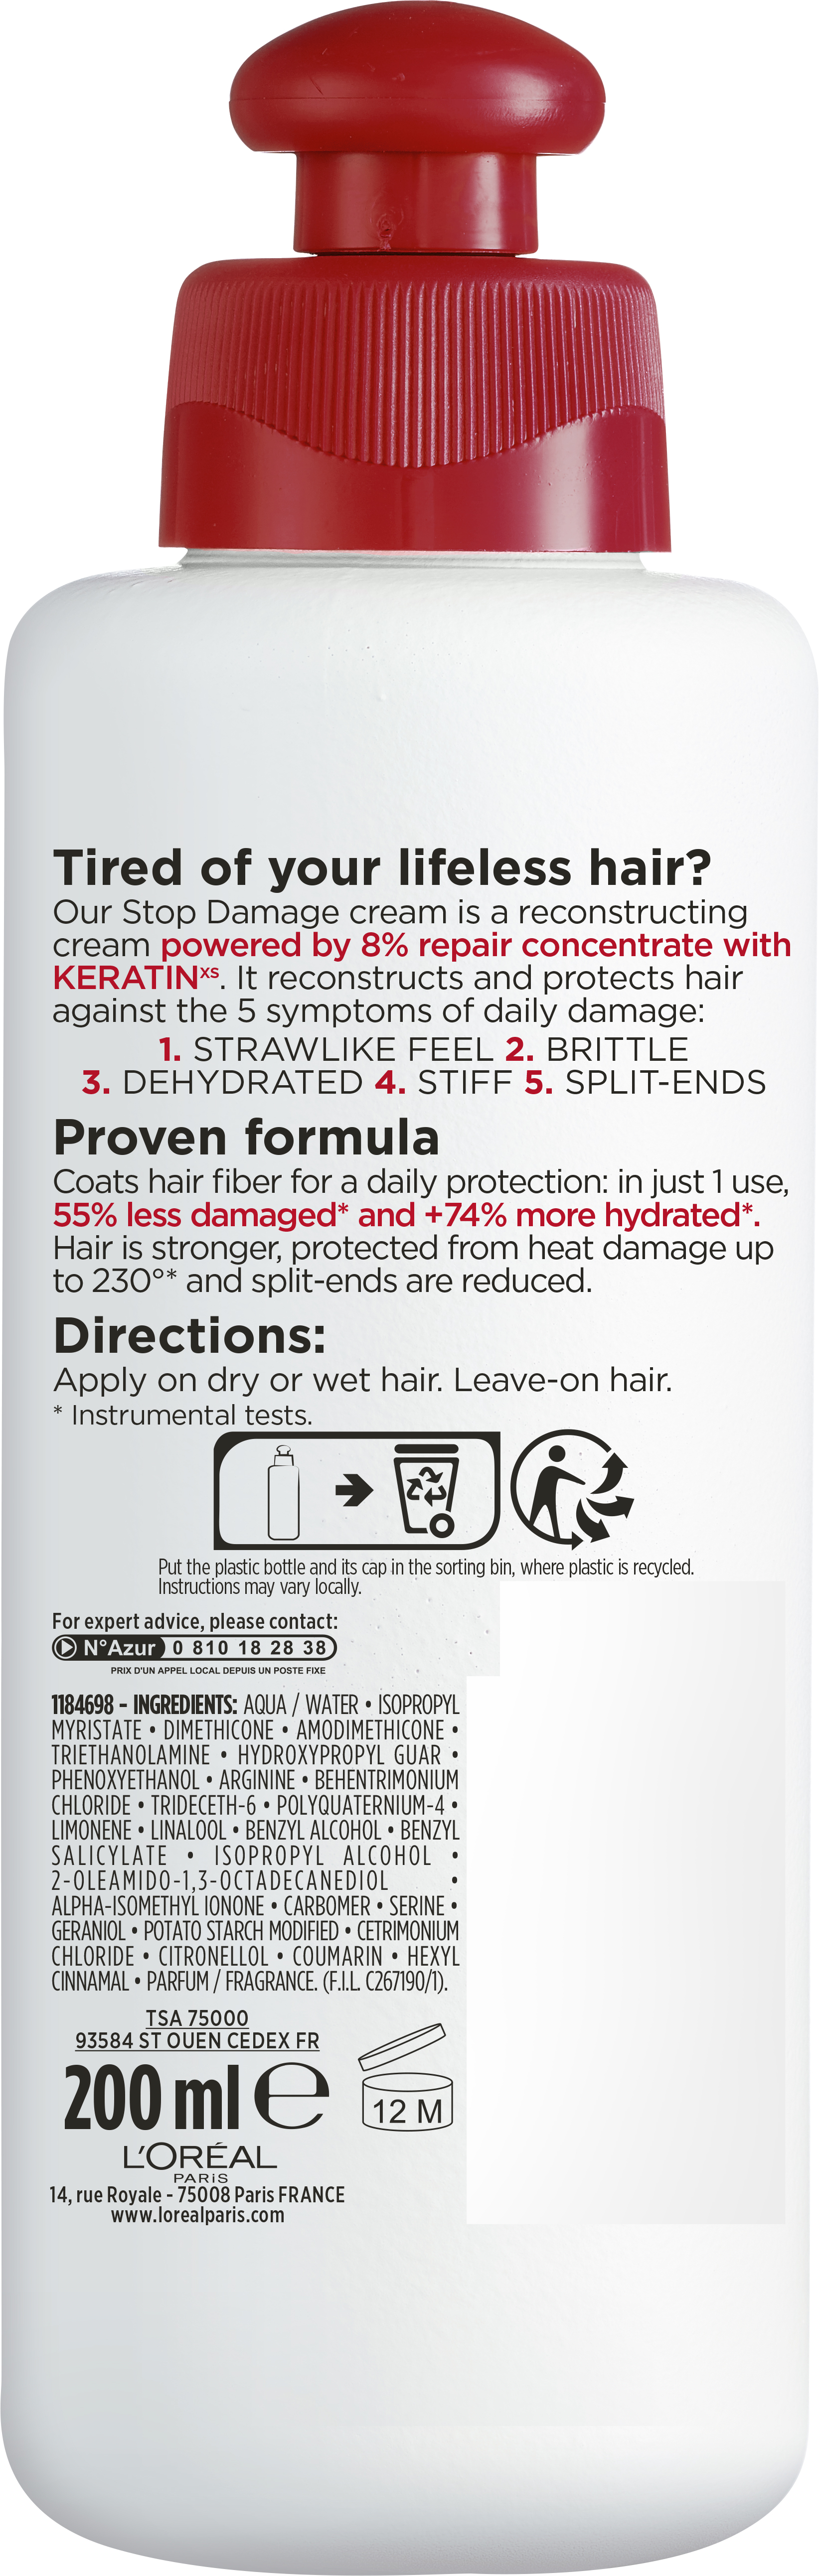 Крем L'Oreal Paris Elseve Полное Восстановление 5 Стоп Повреждение для восстановления поврежденных волос, 200 мл - фото 2